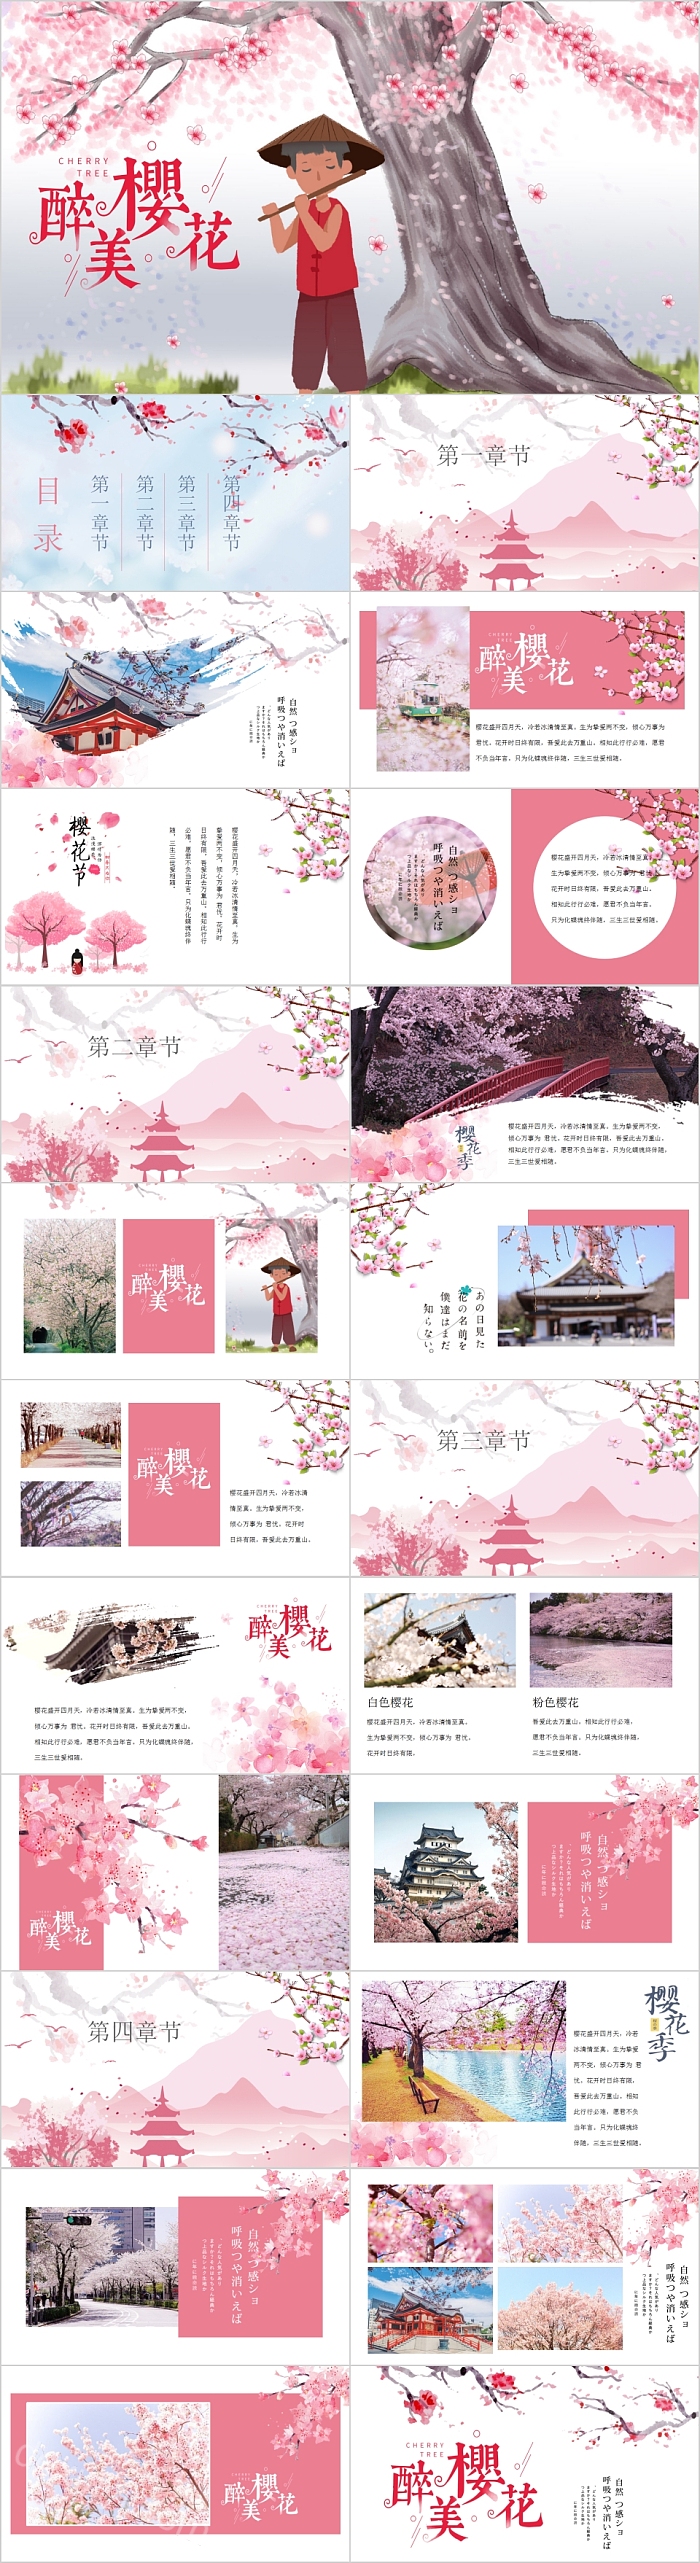 简约清新醉美樱花樱花节旅游画册PPT模板